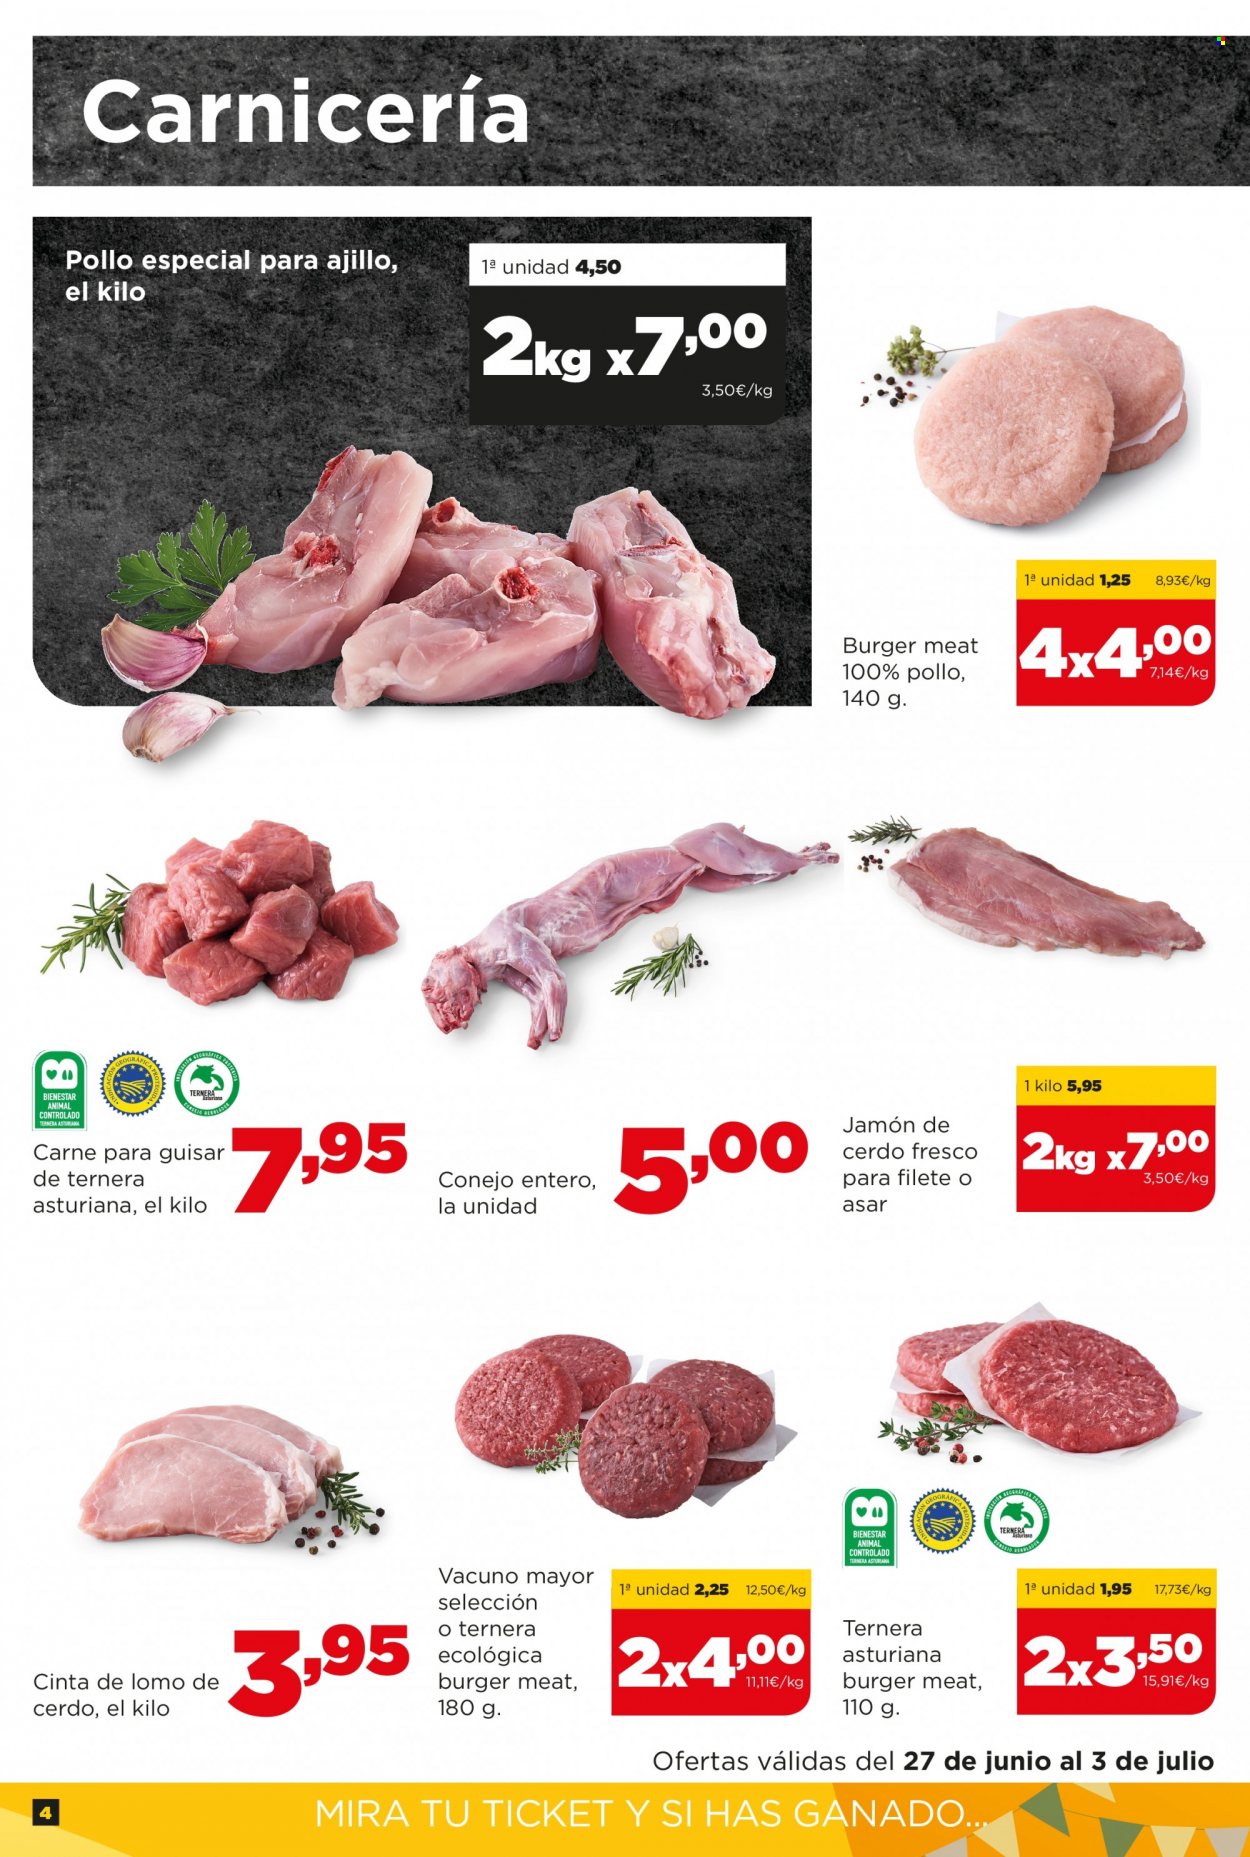 thumbnail - Folleto actual Alimerka - 27/06/22 - 03/07/22 - Ventas - lomo, lomo de cerdo, cinta de lomo, pollo, carne para guisar, hamburguesa, carne picada, conejo, jamón. Página 4.